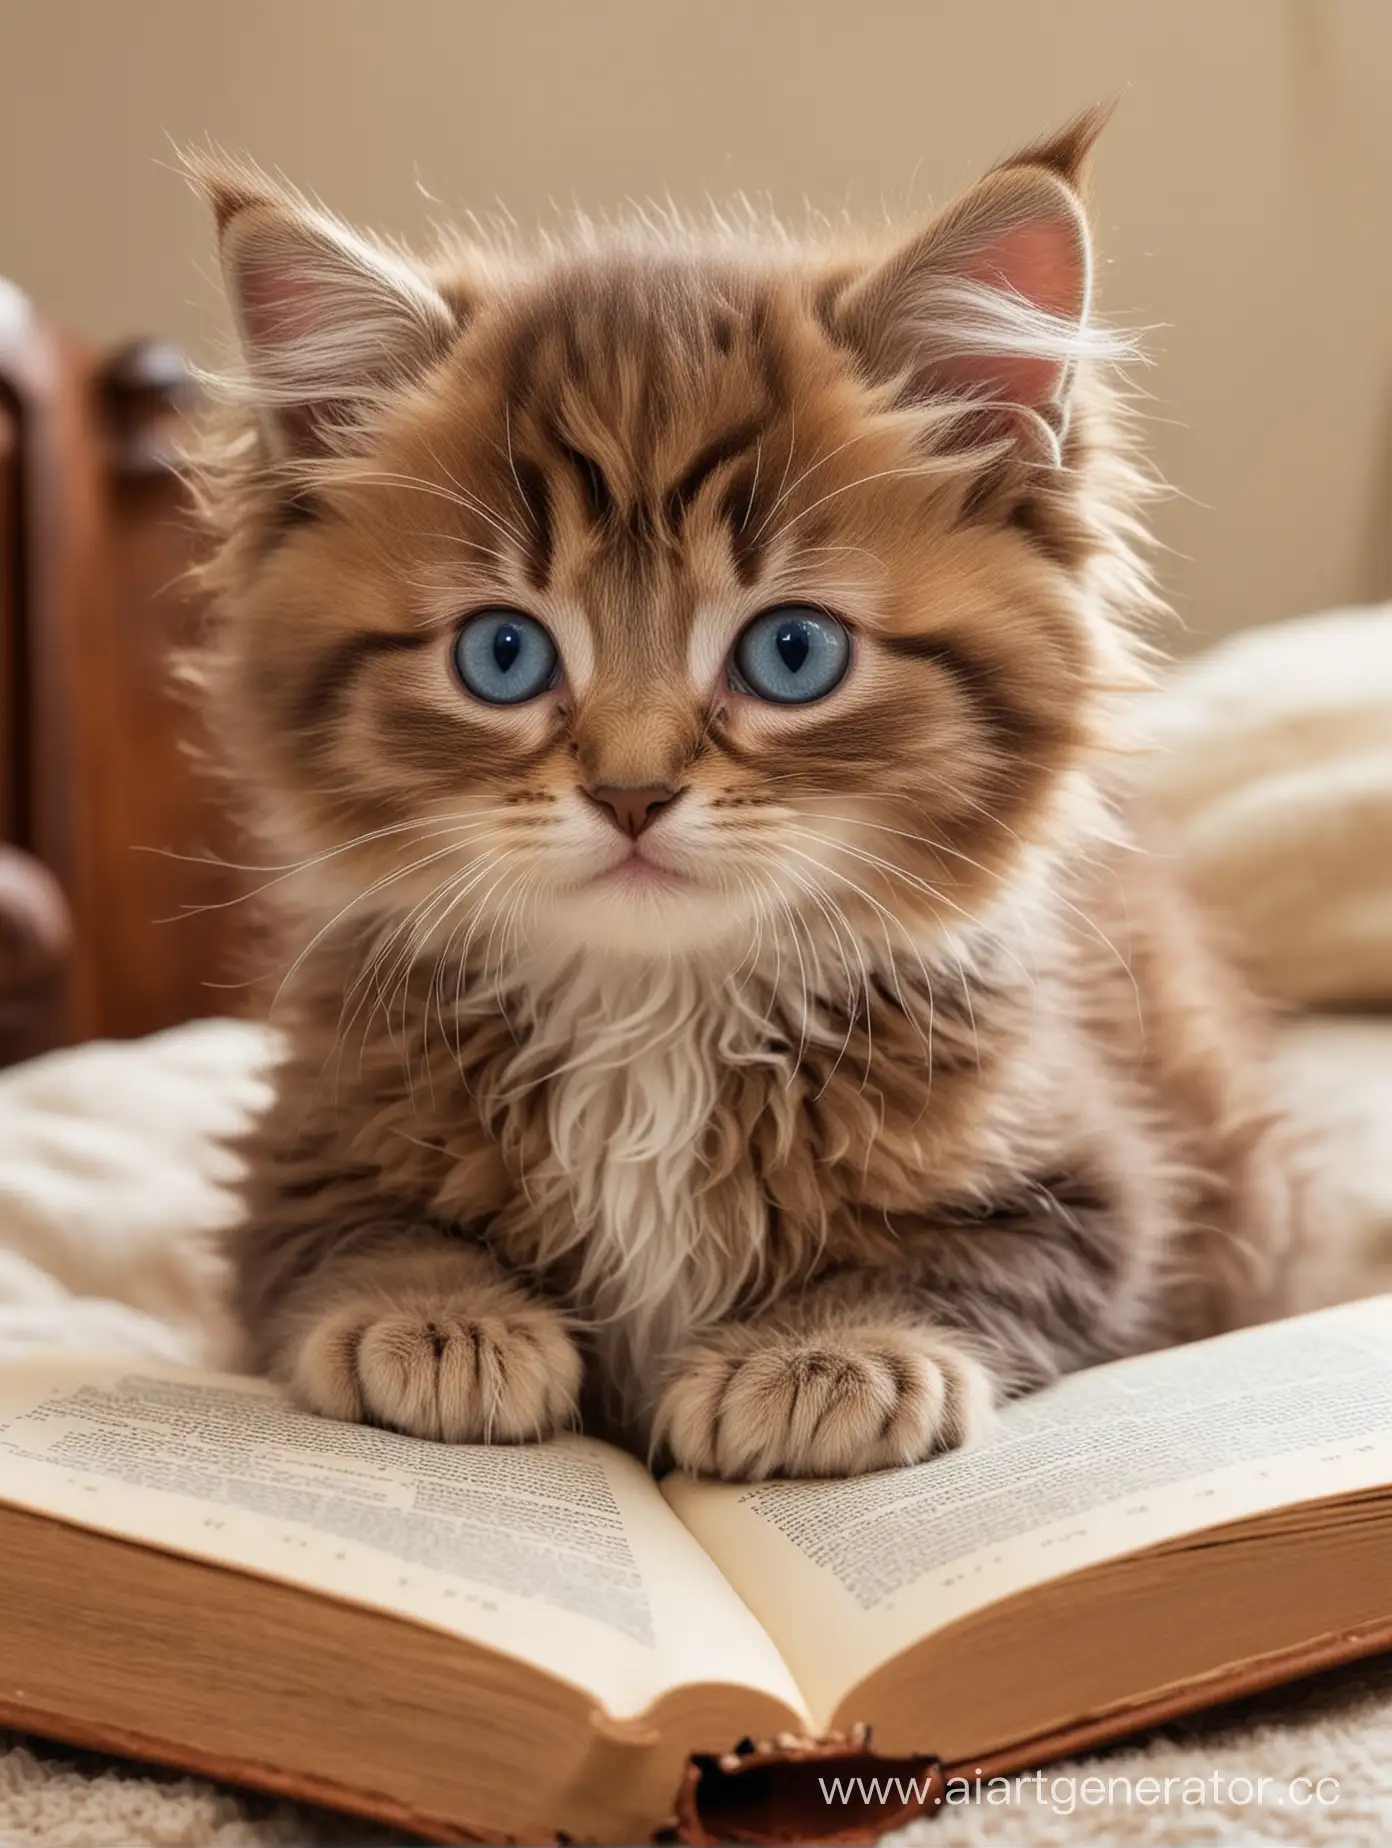 Маленкий котёнок с голубыми глазами , у которого на голове коричневые кудрявые волосы , он очень пушистый и милый. Он собирается садится читать властелина колец рядом с ним на кровати лежит эта книга , сам он тихонько сидит на той же кровати 